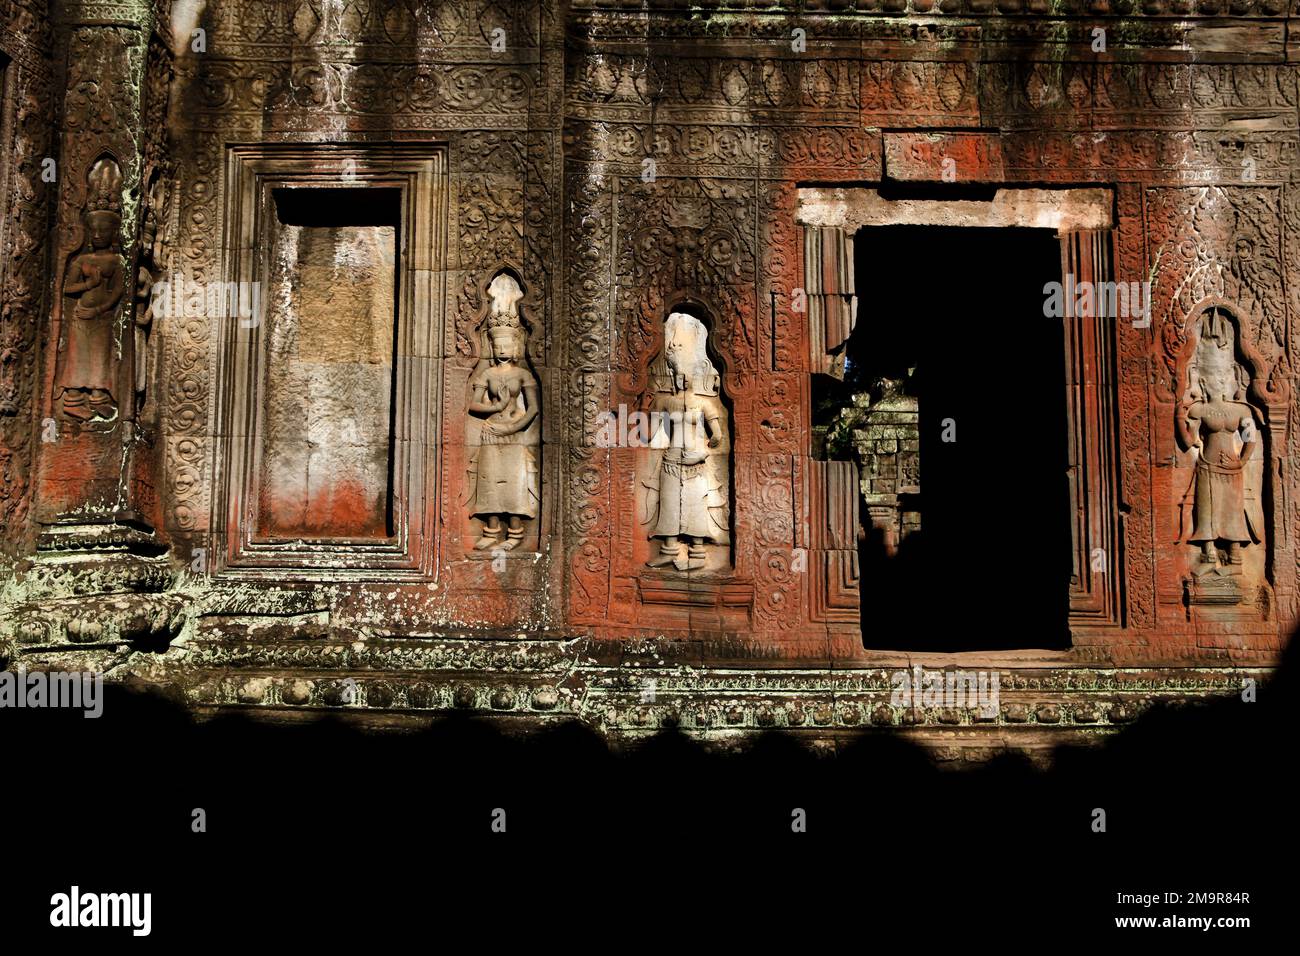 Eine mit apsara-Reliefs geschmückte Mauer in Ta Prohm, einem alten Kloster und Tempel in Siem Reap, Kambodscha. Stockfoto